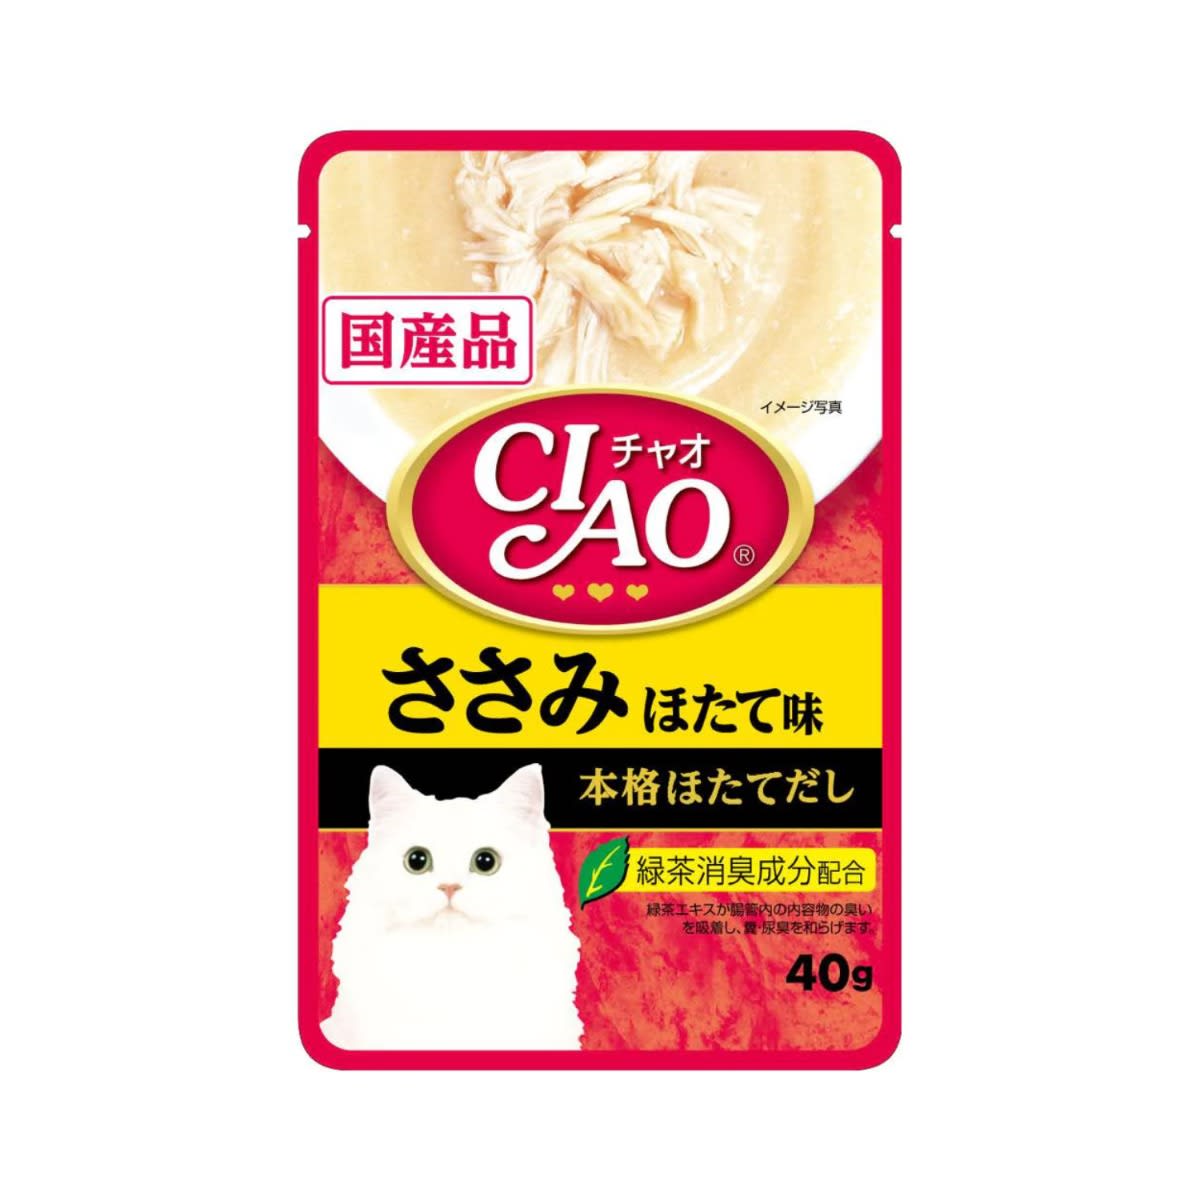 Ciao เชาว์ อาหารเปียก แบบเพ้าช์ สำหรับแมว สูตรเนื้อสันในไก่ รสหอยเชลล์ 40 g_2